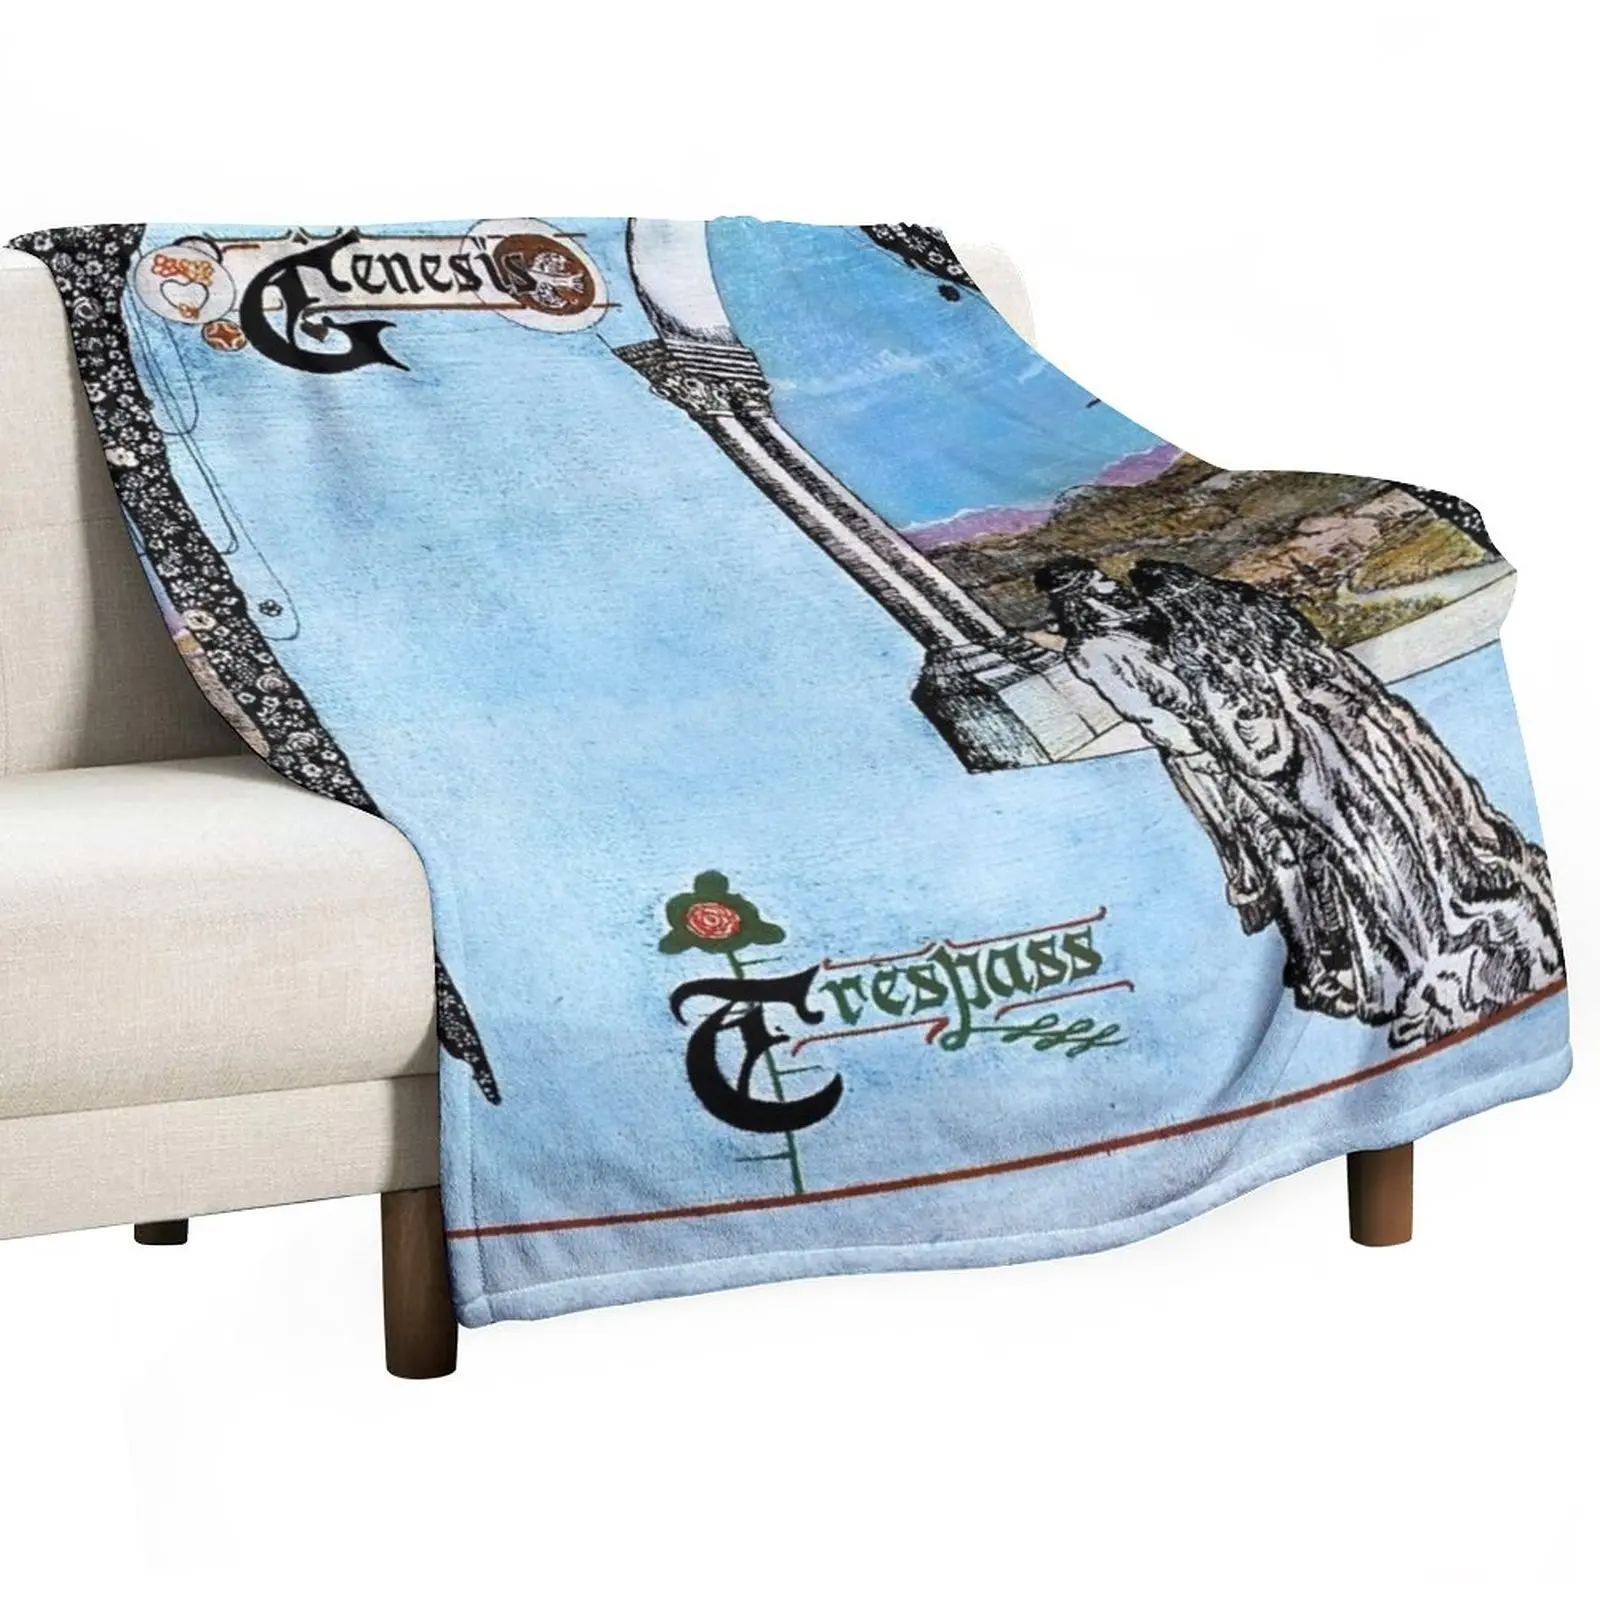 

Trespass (HQ) Throw Blanket Luxury Brand Blanket throw blanket for sofa